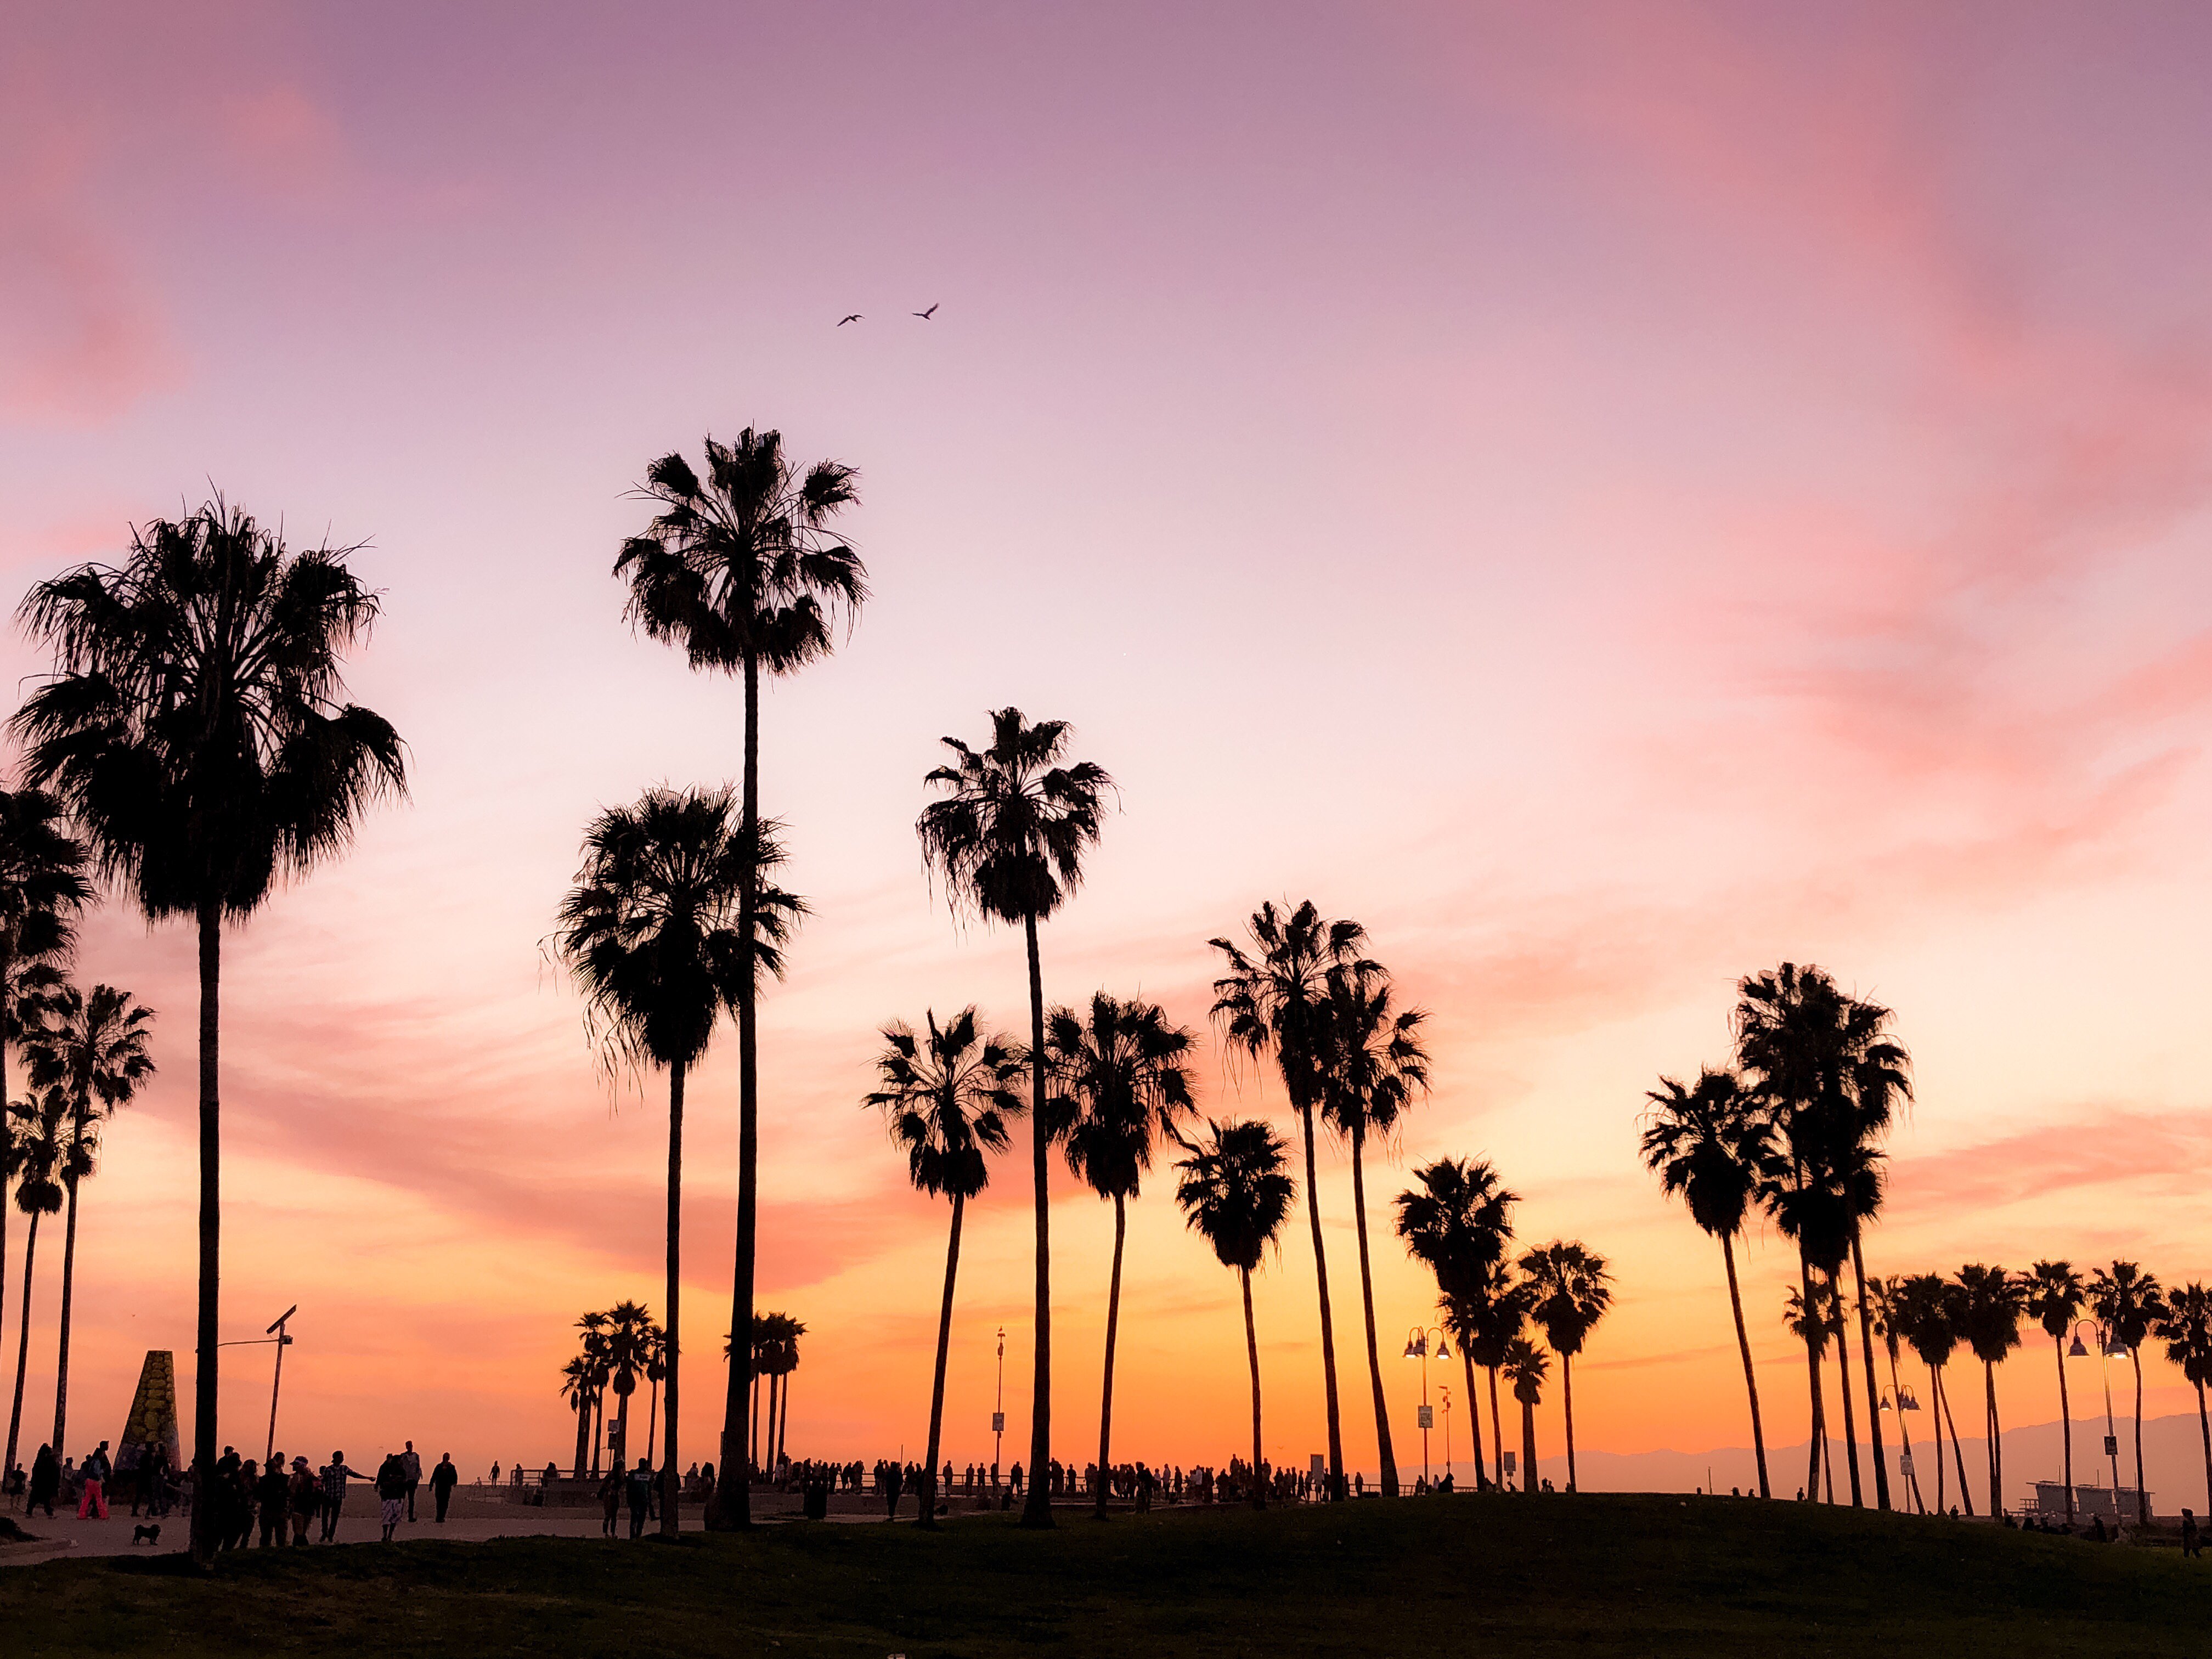 Venice Beach , HD Wallpaper & Backgrounds